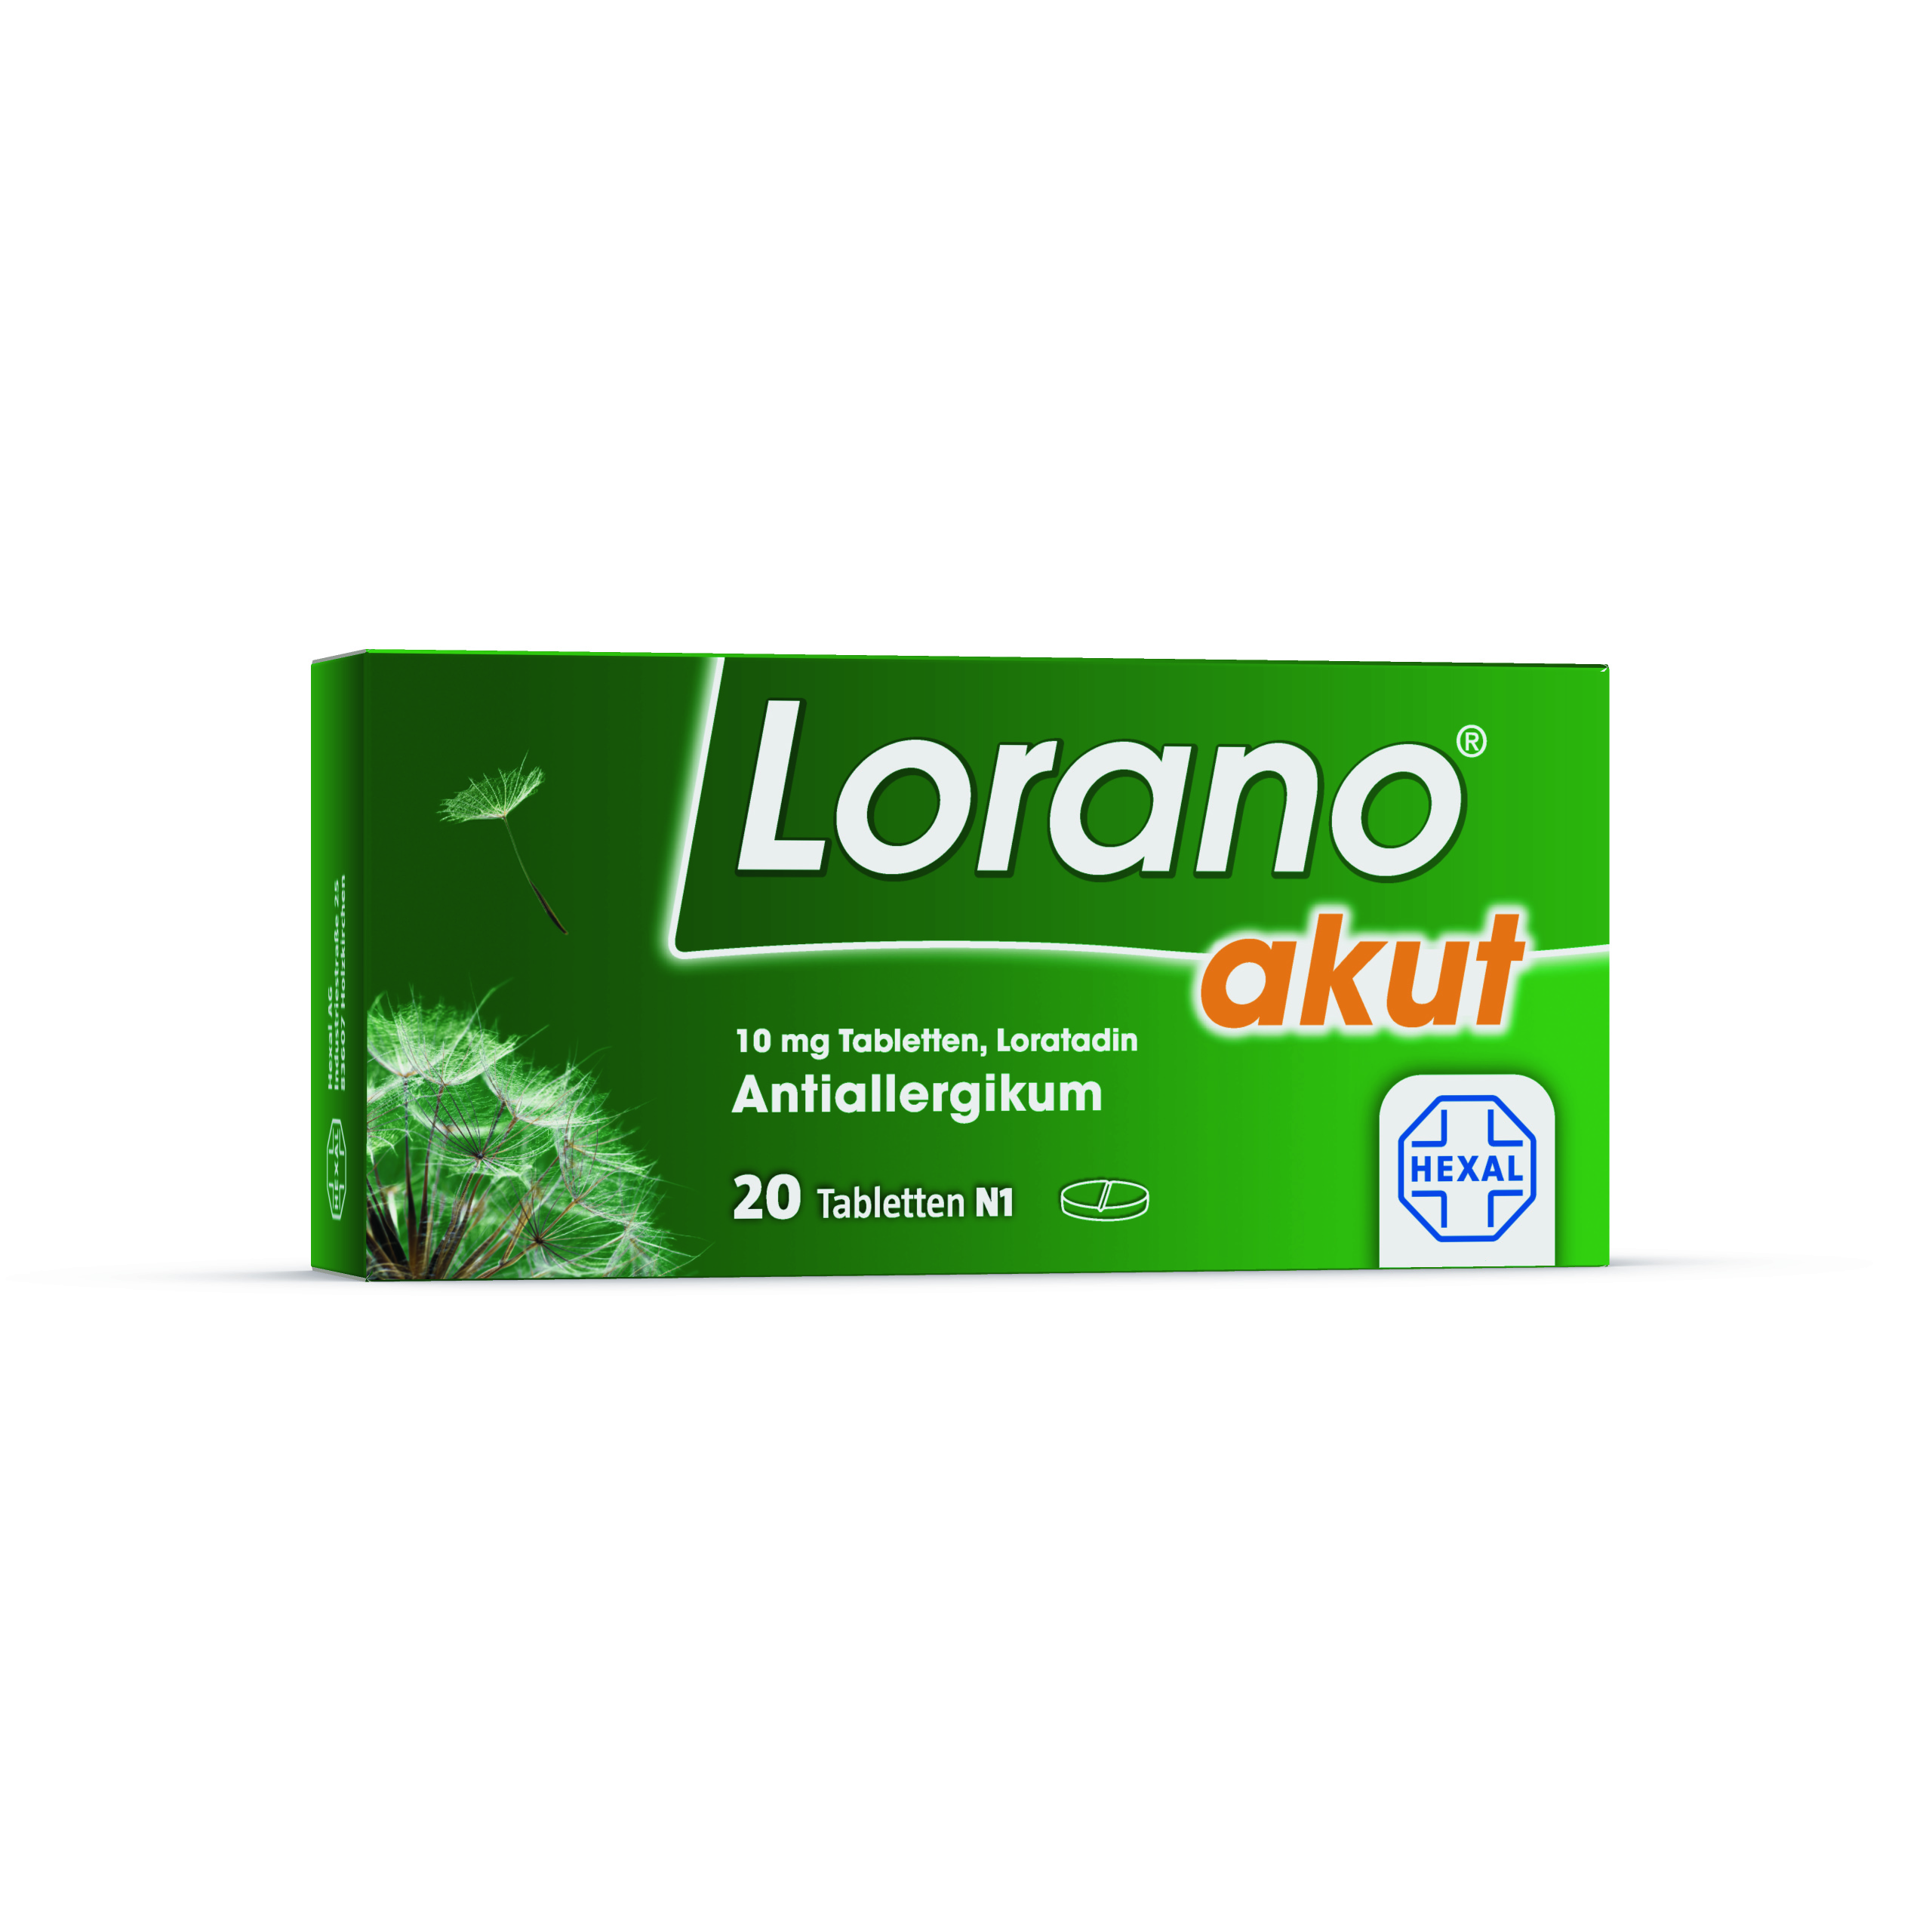 Lorano akut (20 Stk)